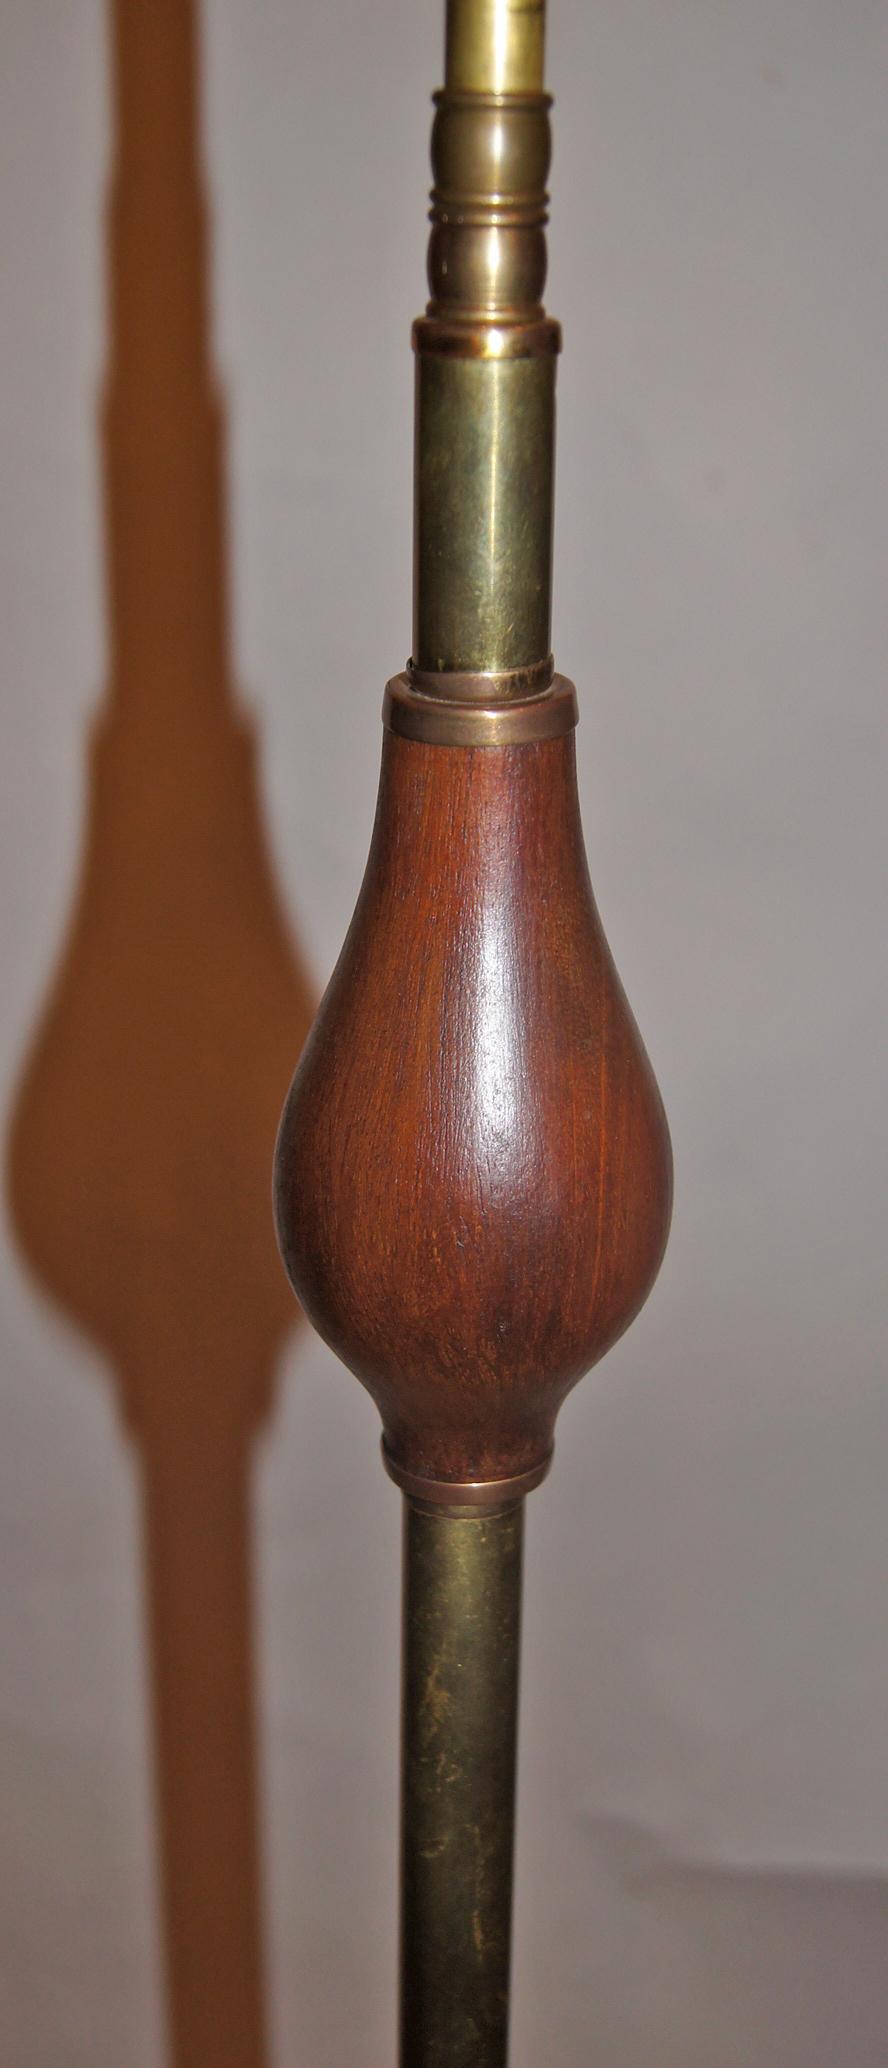 Lampadaire italien en bois et bronze-métal des années 1940.

Mesures :
Hauteur : 57